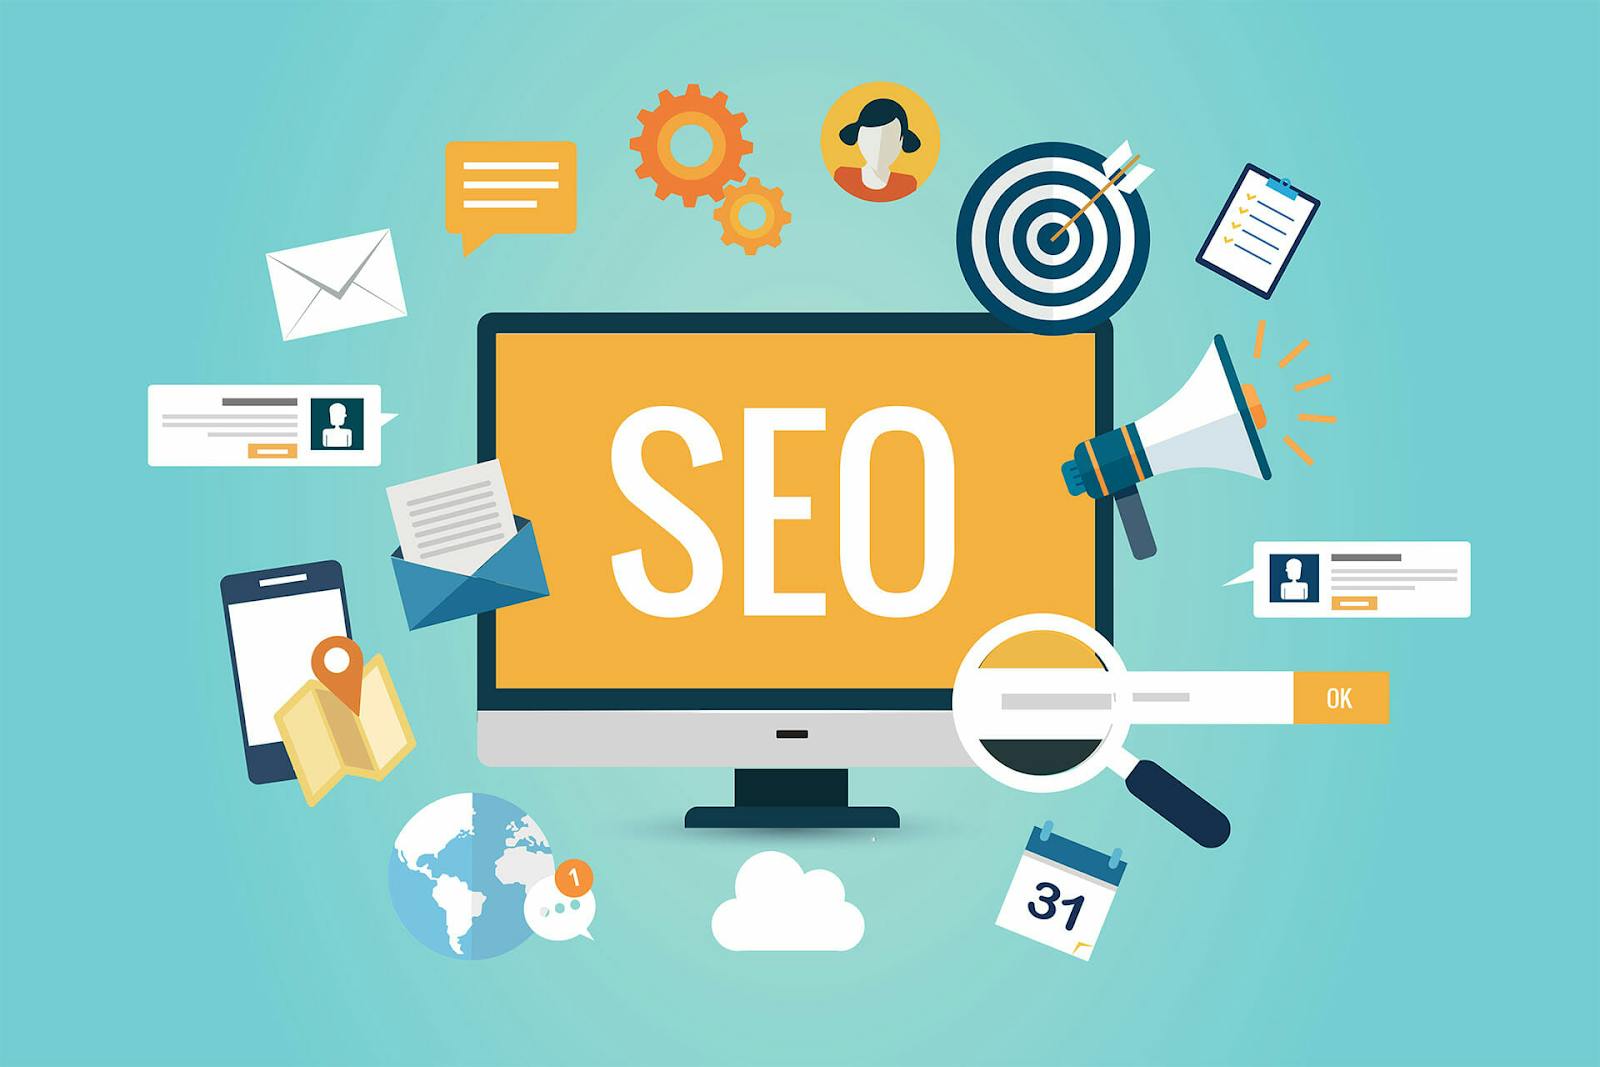 SEO tổng thể tập trung tối ưu toàn bộ website giúp website đạt được thứ hạng tốt trên công cụ tìm kiếm